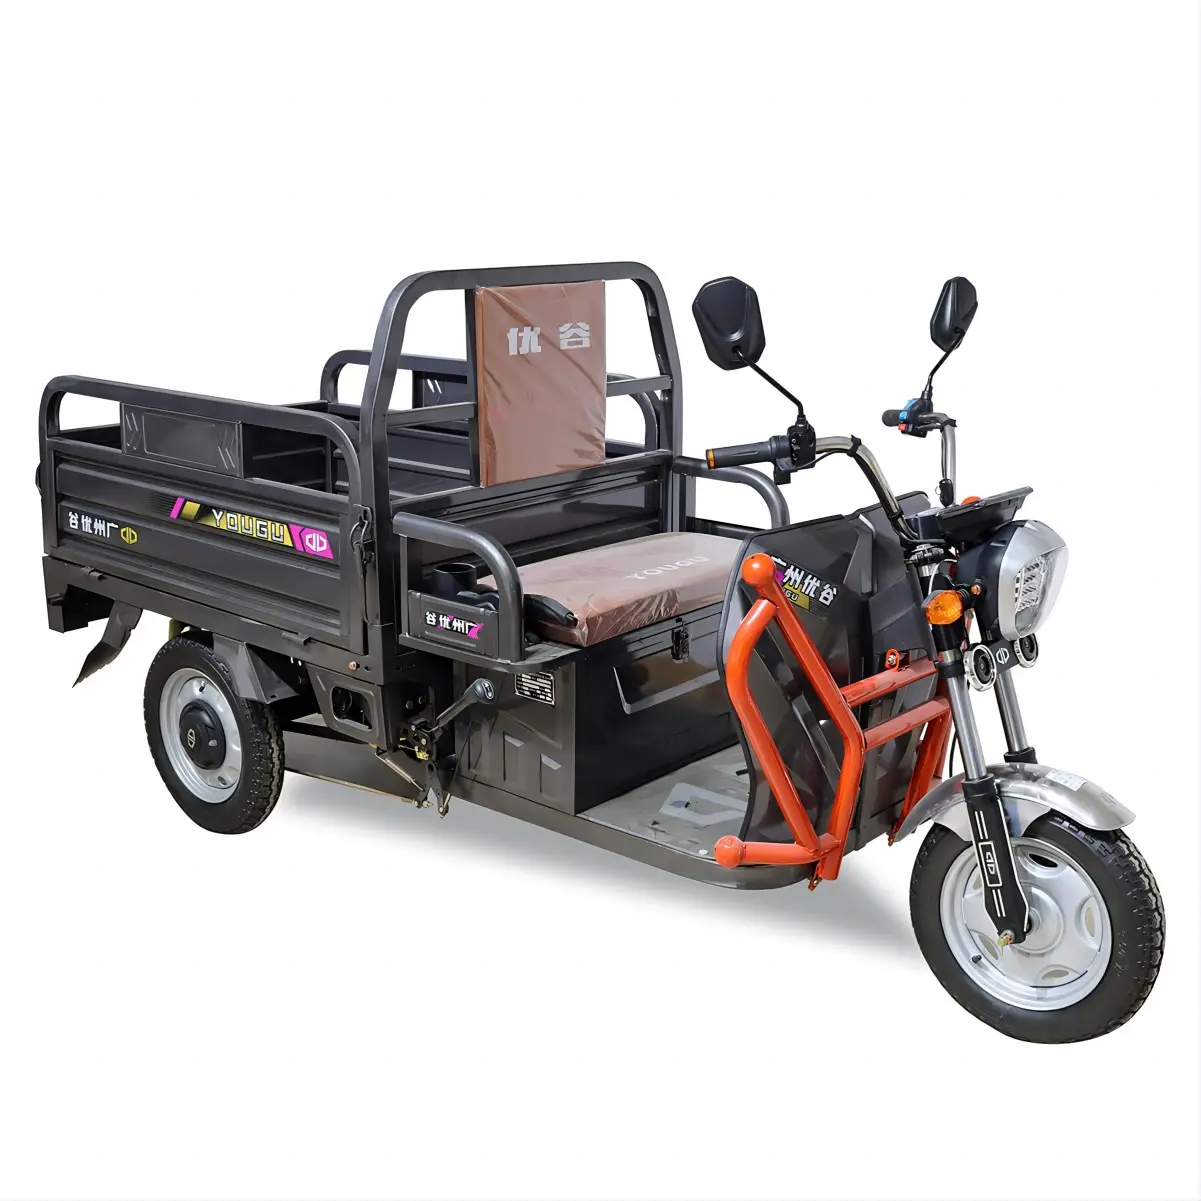 LUBEI Fabricant de véhicules 1.3m/1.5m/1.6m/1.8m 800W/1000W/1500W Tricycle à 3 roues Moteur électrique Tricycle électrique Cargo